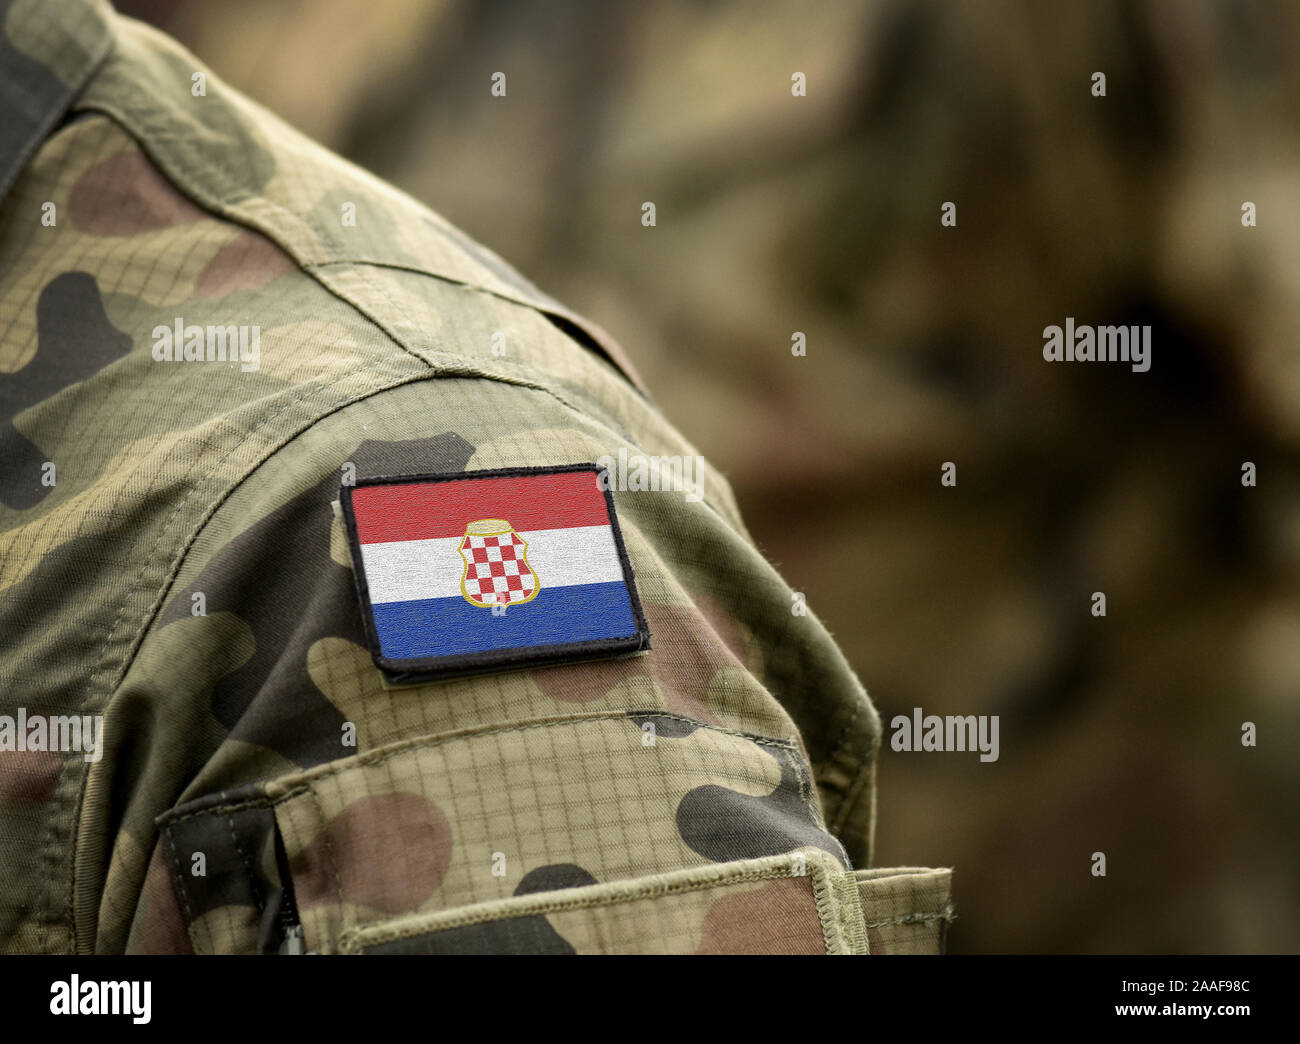 Flagge der Kroatische Republik Herceg-Bosna" (1991 - 1996) auf der Uniform. Armee, Bundeswehr, Soldaten. Collage. Stockfoto